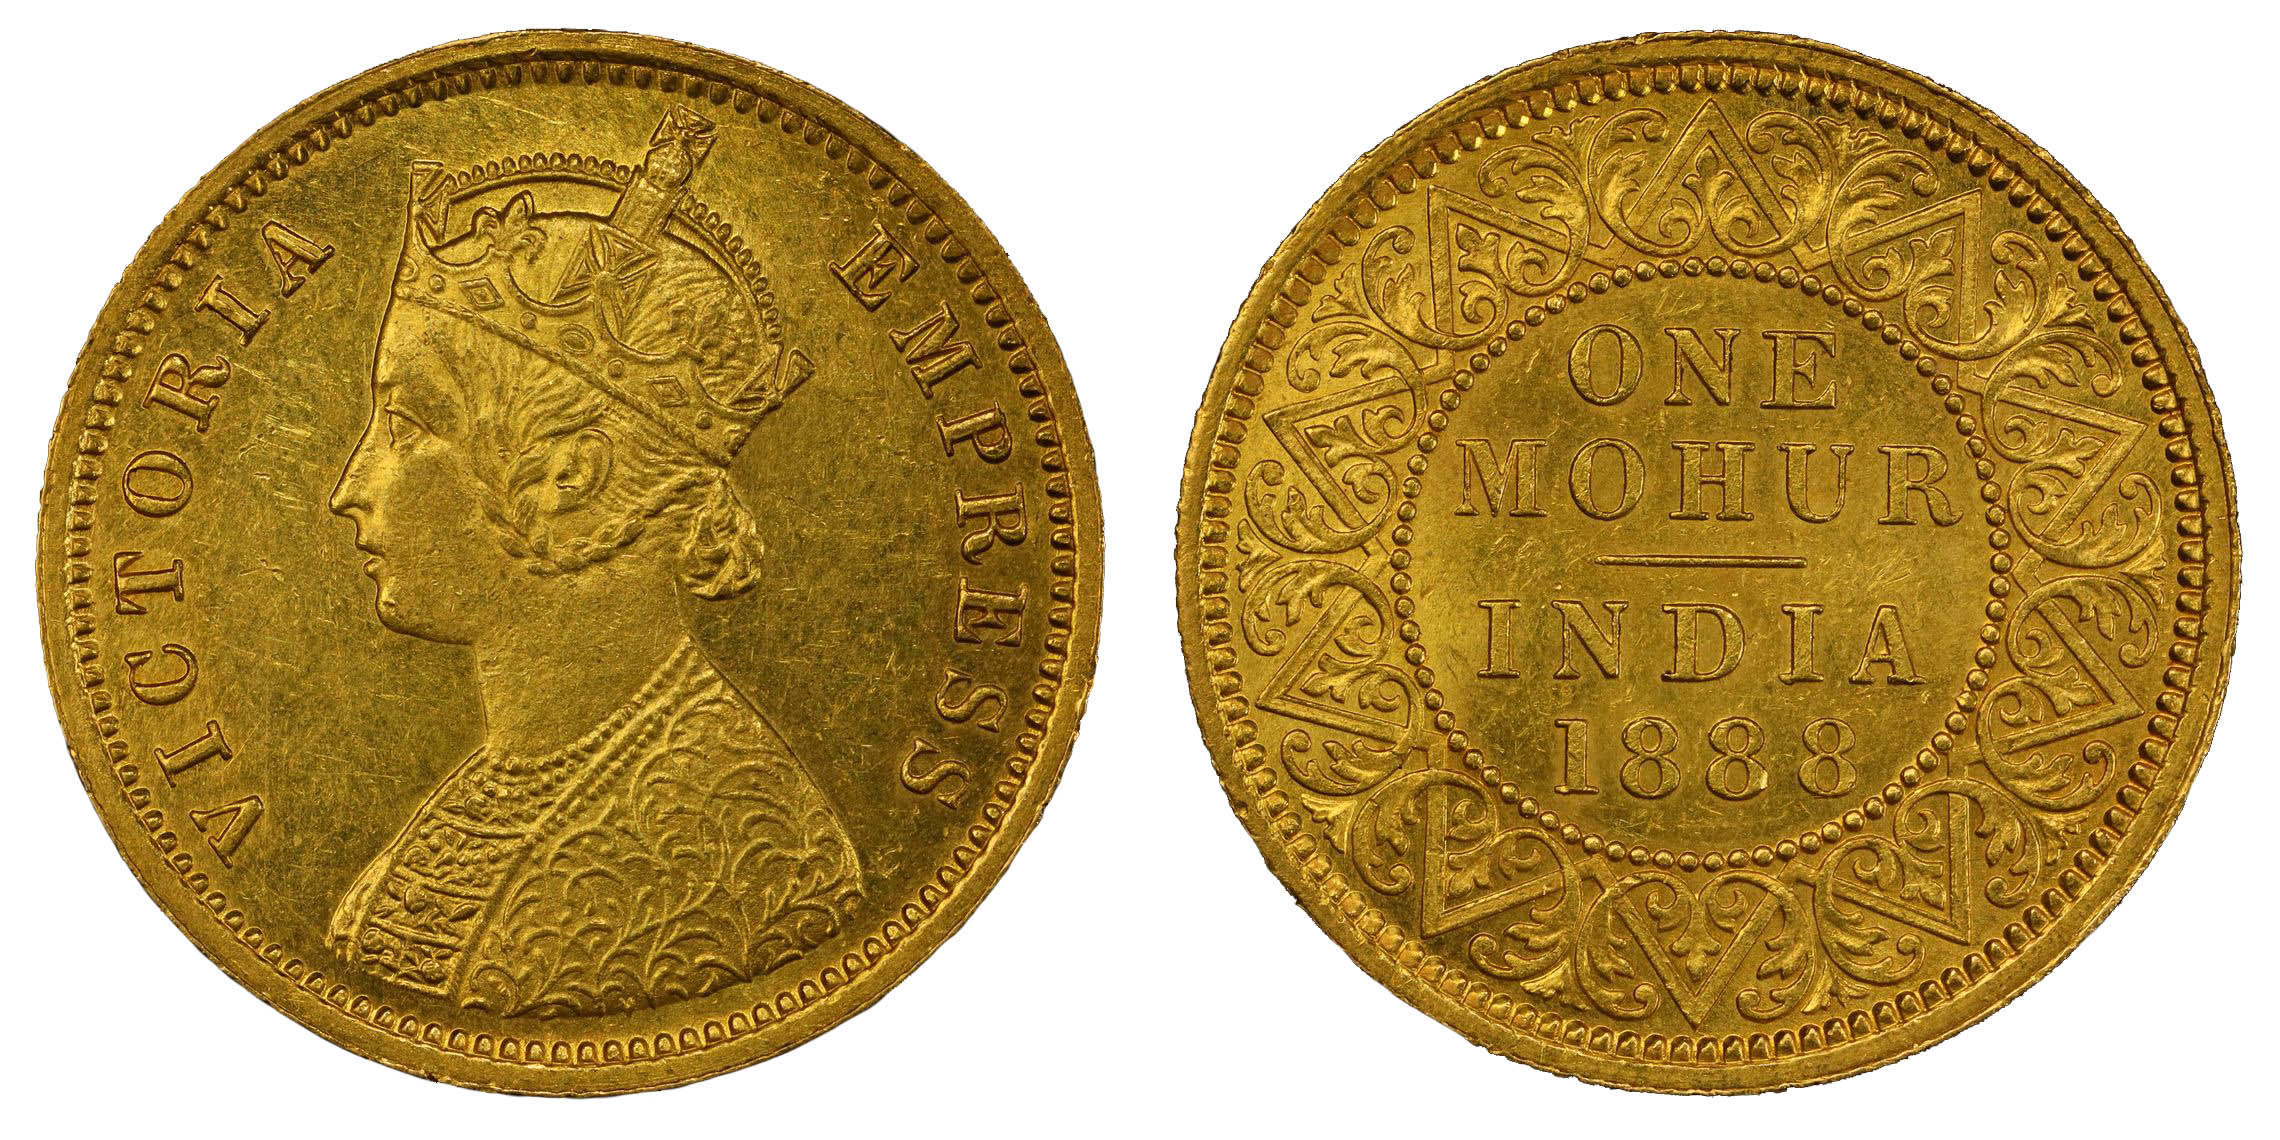 India, EIC, Victoria (1837-1901), gold Mohur, 1888 - AU 58